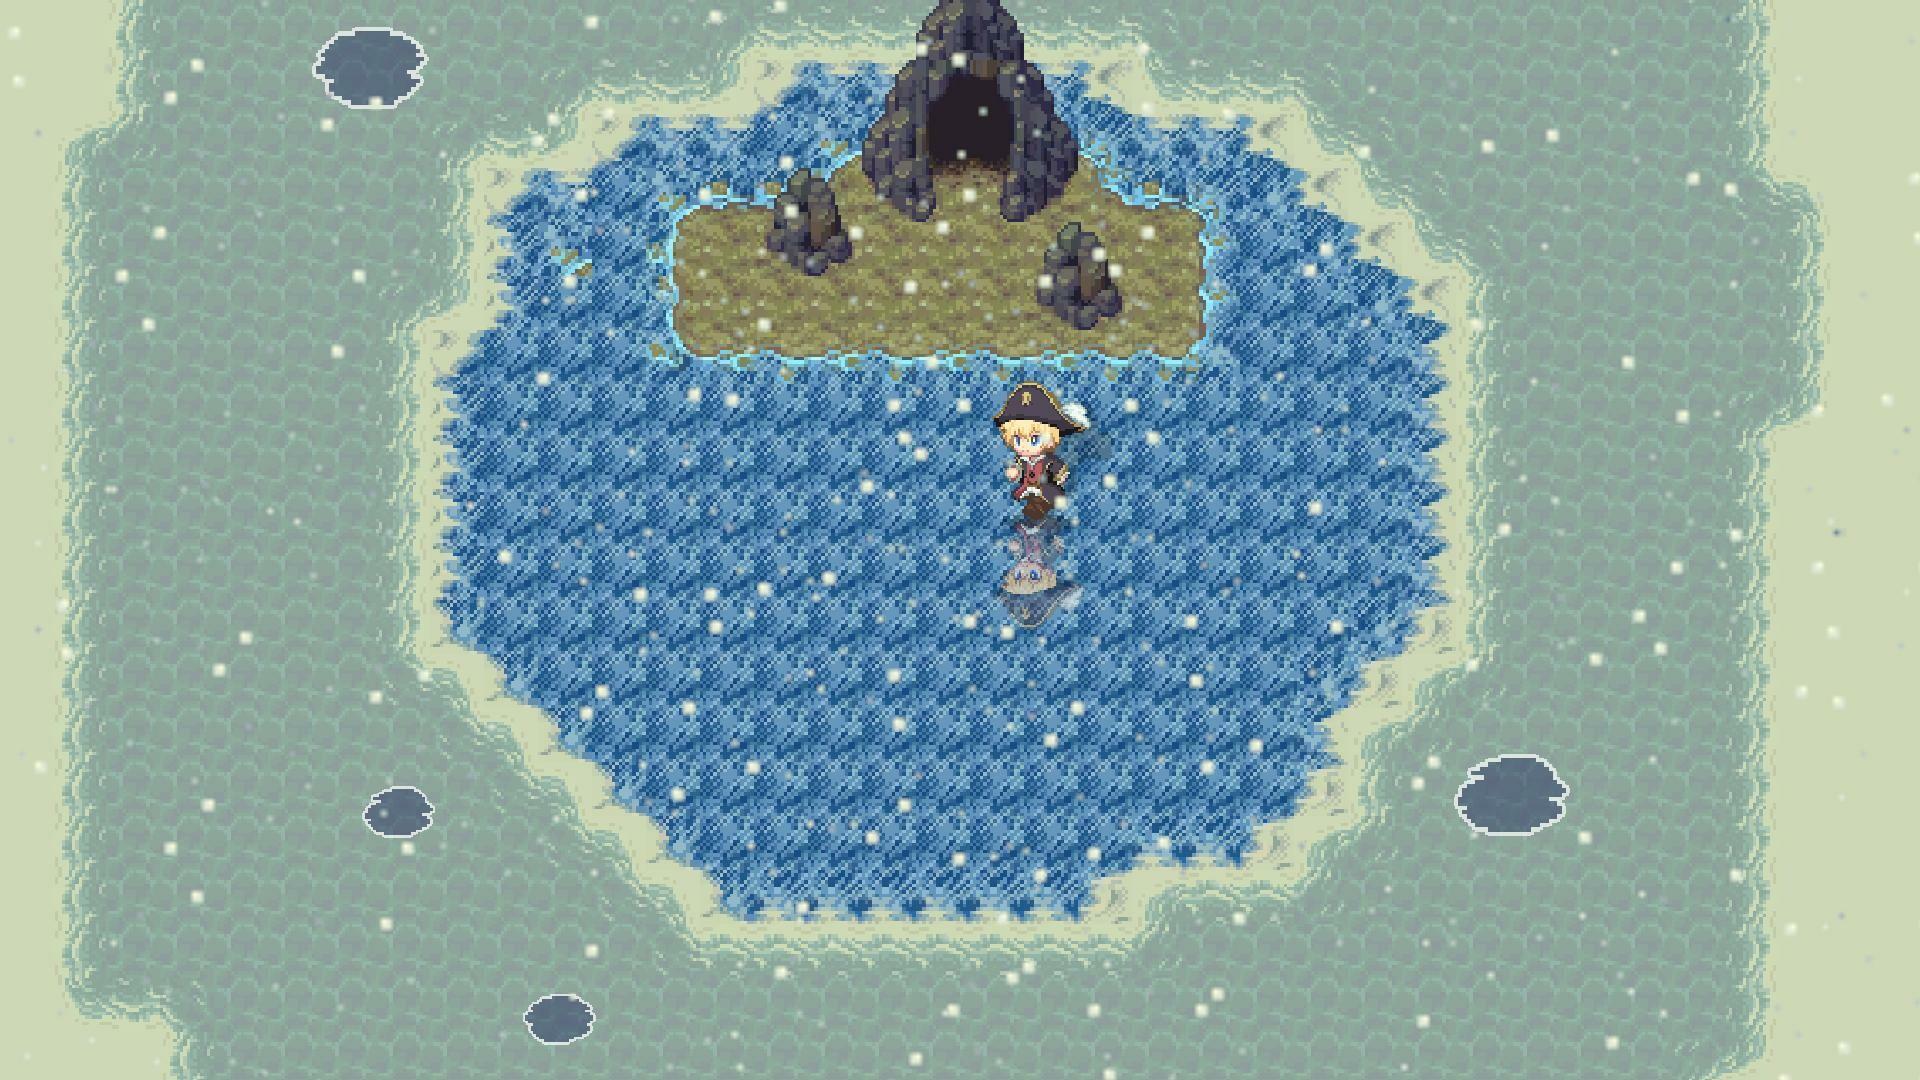 Sea Fantasy screenshot game